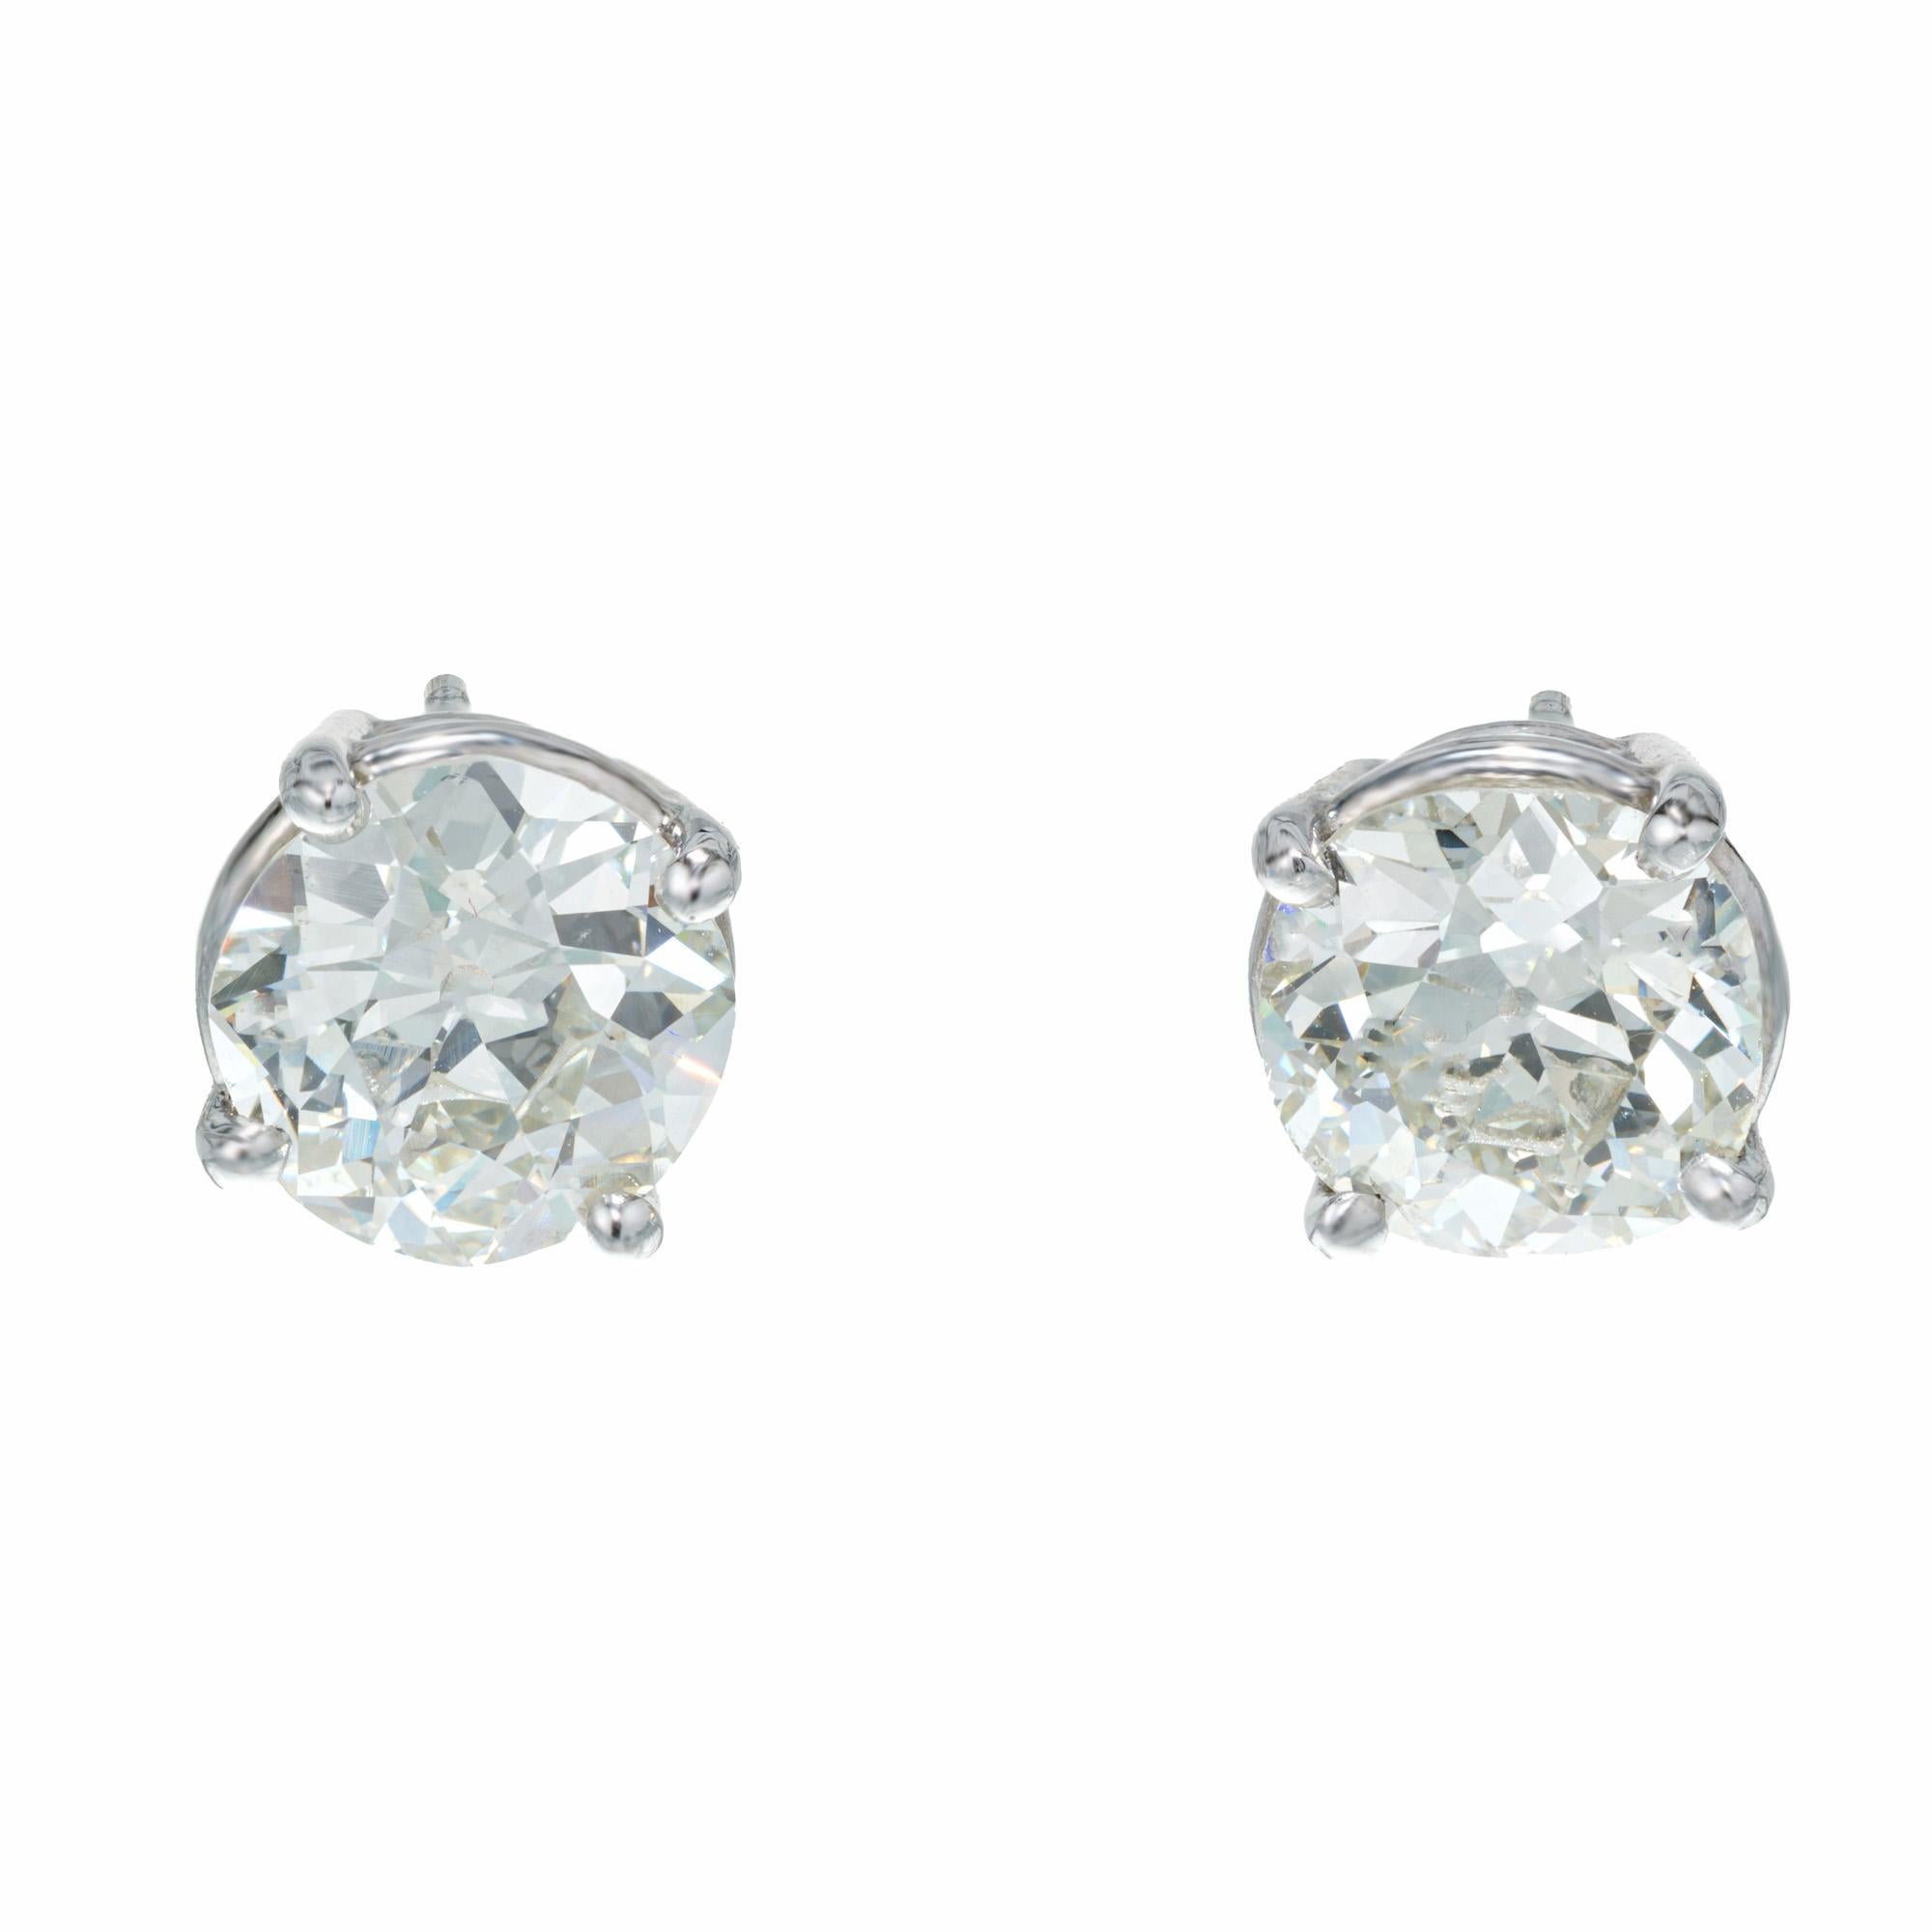 Gut aufeinander abgestimmte Diamant-Ohrstecker im alten europäischen Schliff. 2, EGL zertifiziert I-J (fast farblos) runde Diamanten von insgesamt 3,35cts. In einfachen 4-Zacken-Fassungen aus Platin gefasst. Beide Steine sind gleich schön und haben